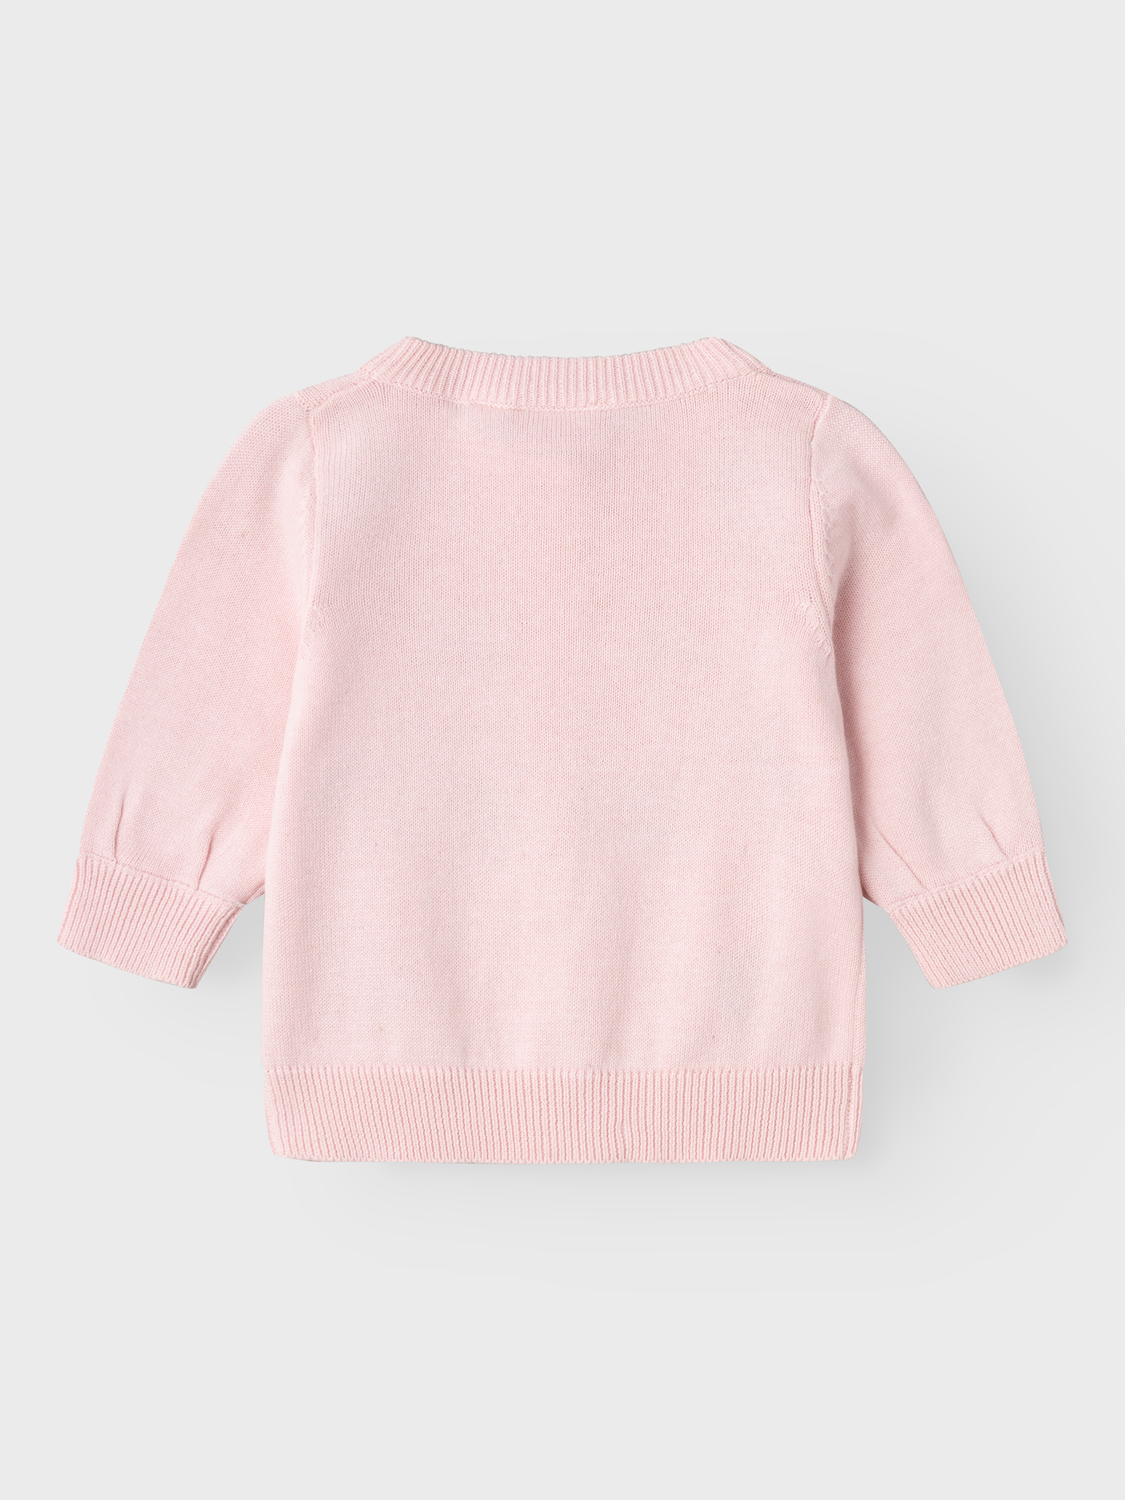 NBFFASILLE Knit - Parfait Pink